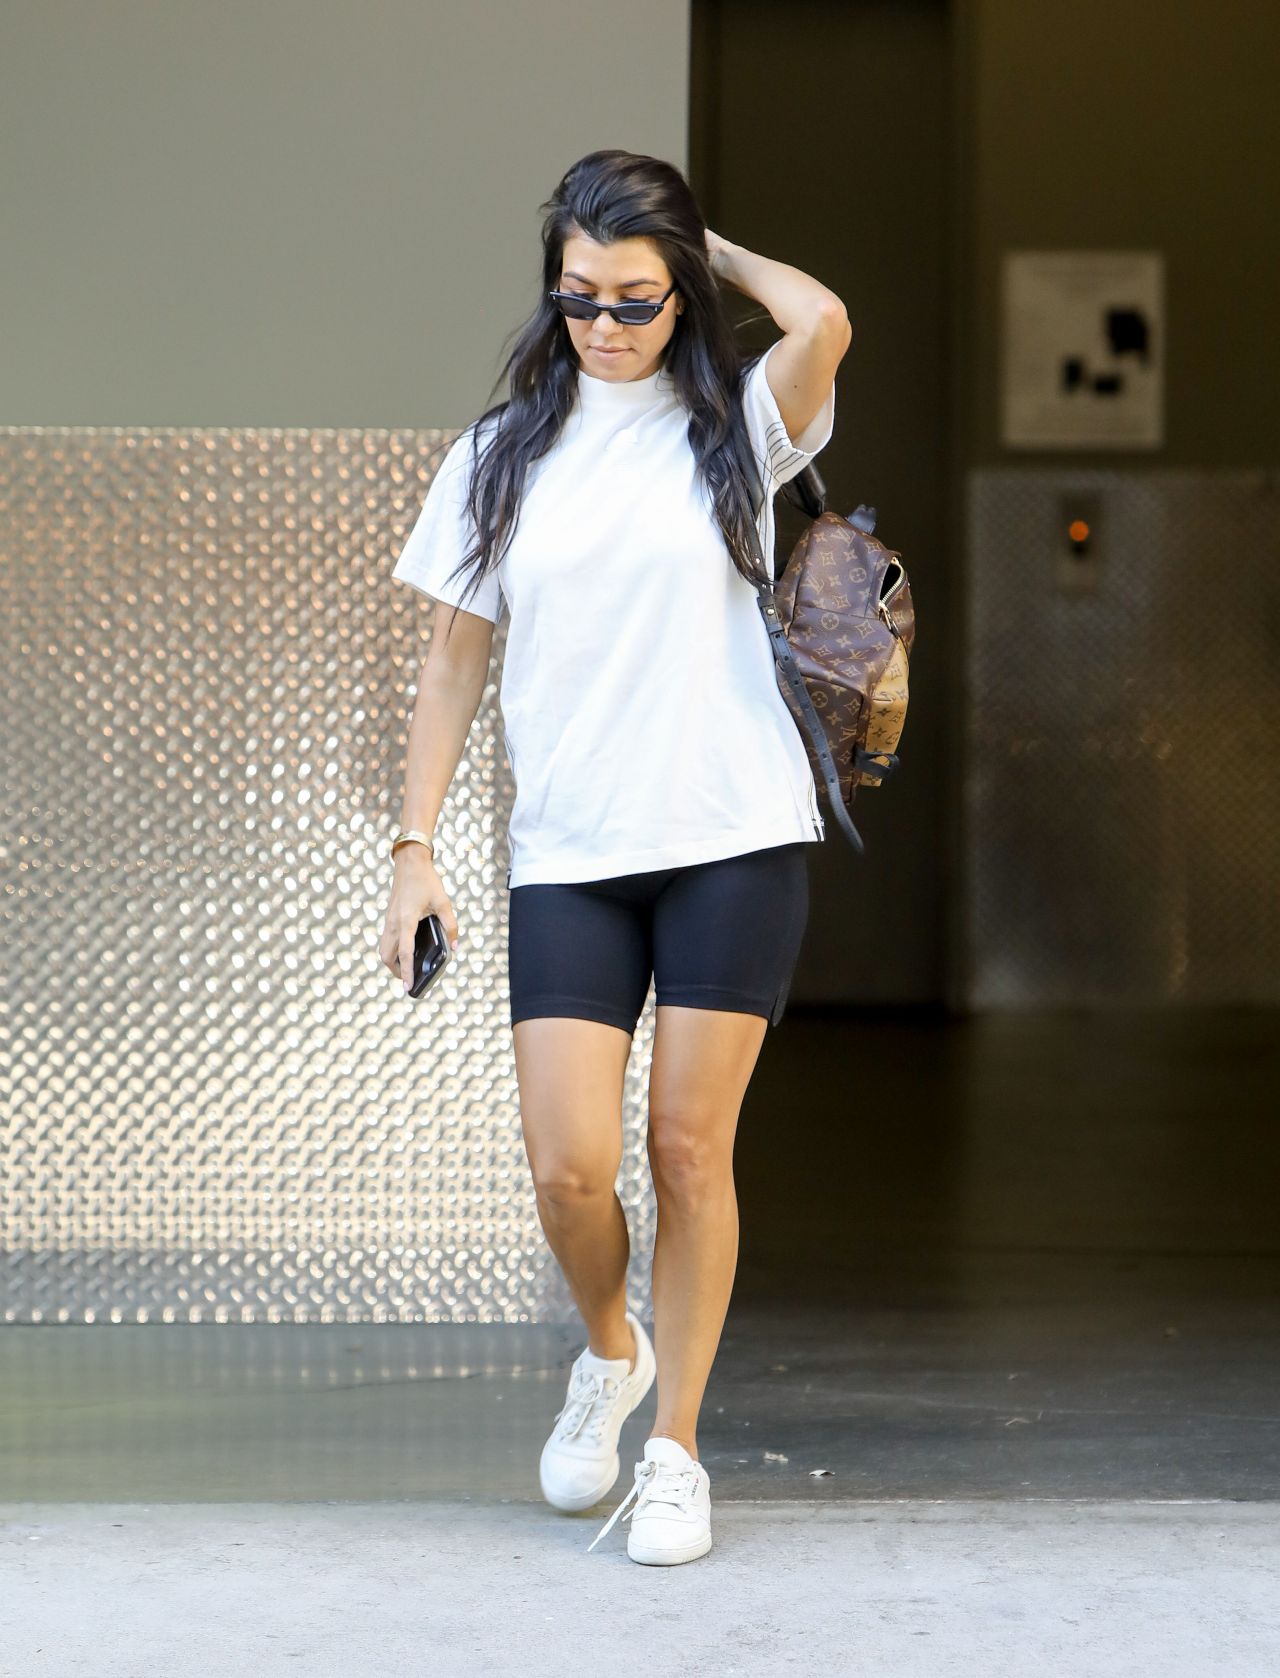 Kourtney Kardashian Calabasas June 27, 2017 – Star Style